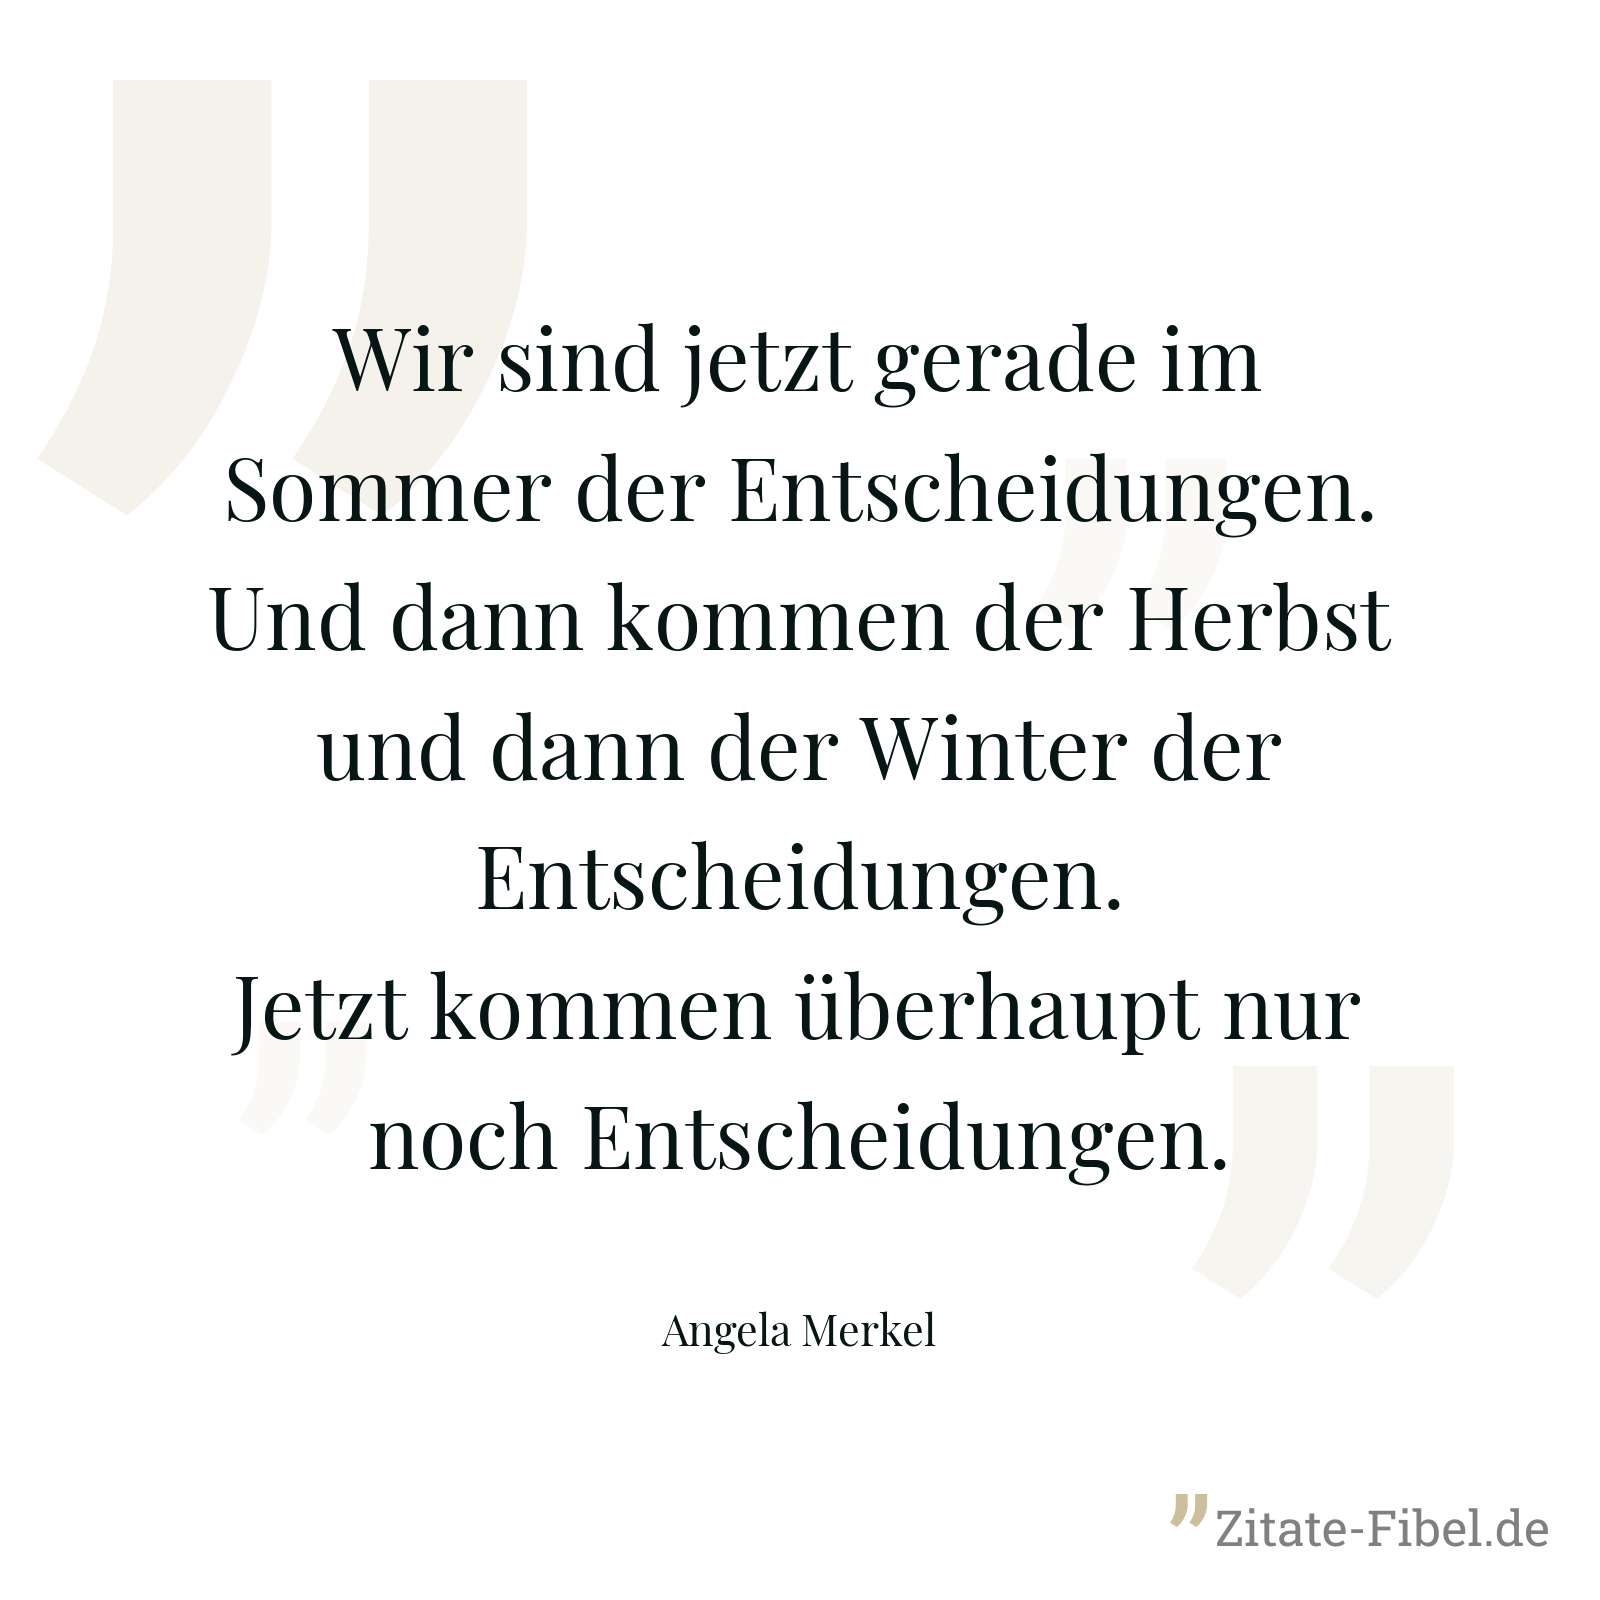 Wir sind jetzt gerade im Sommer der Entscheidungen. Und dann kommen der Herbst und dann der Winter der Entscheidungen. Jetzt kommen überhaupt nur noch Entscheidungen. - Angela Merkel